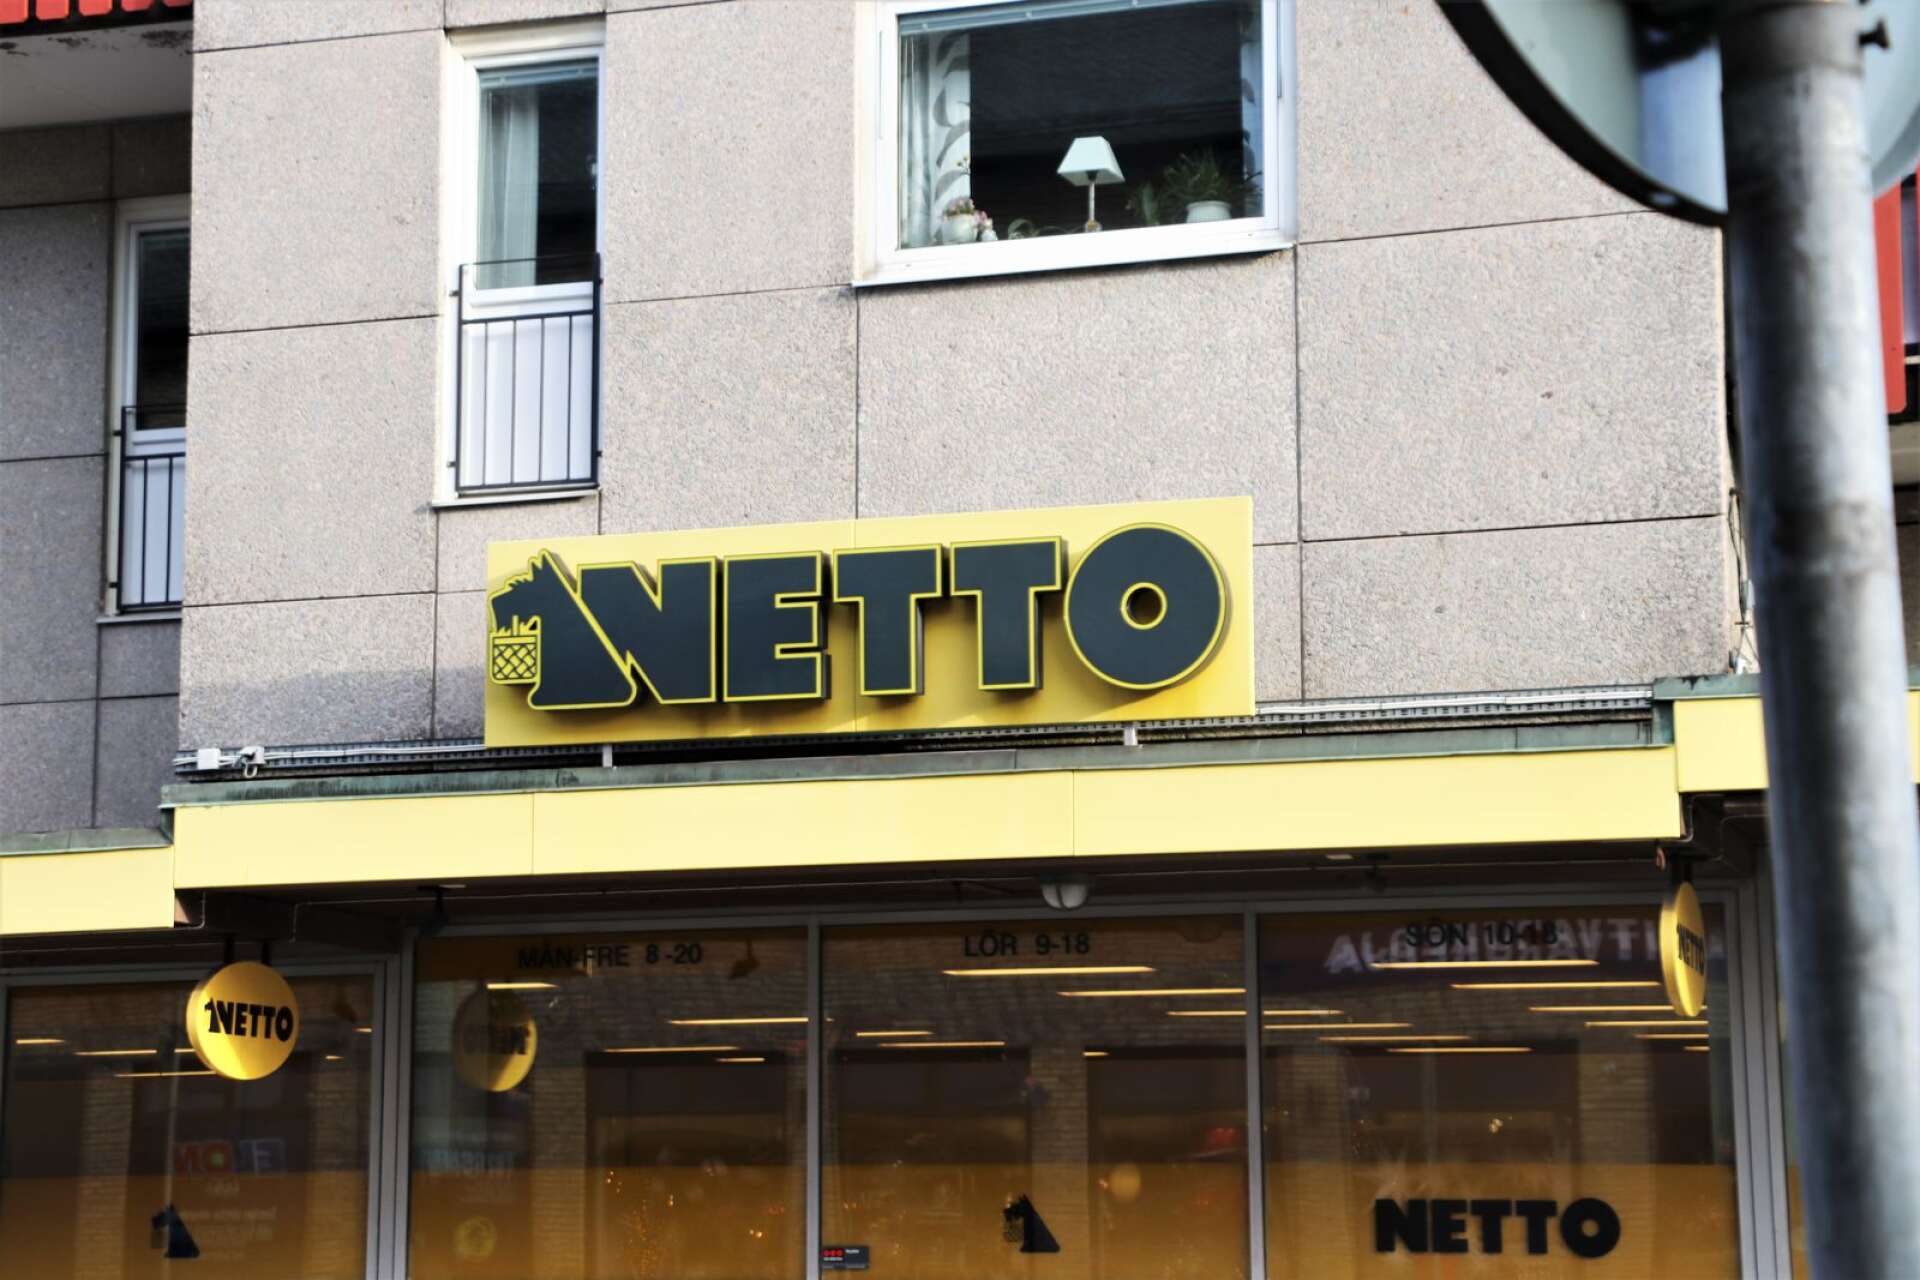 Tidigare har det sagts att Nettobutiken på Kungsgatan i Åmål ska bli en Coopbutik. Men nu blir det permanent stängning i stället.